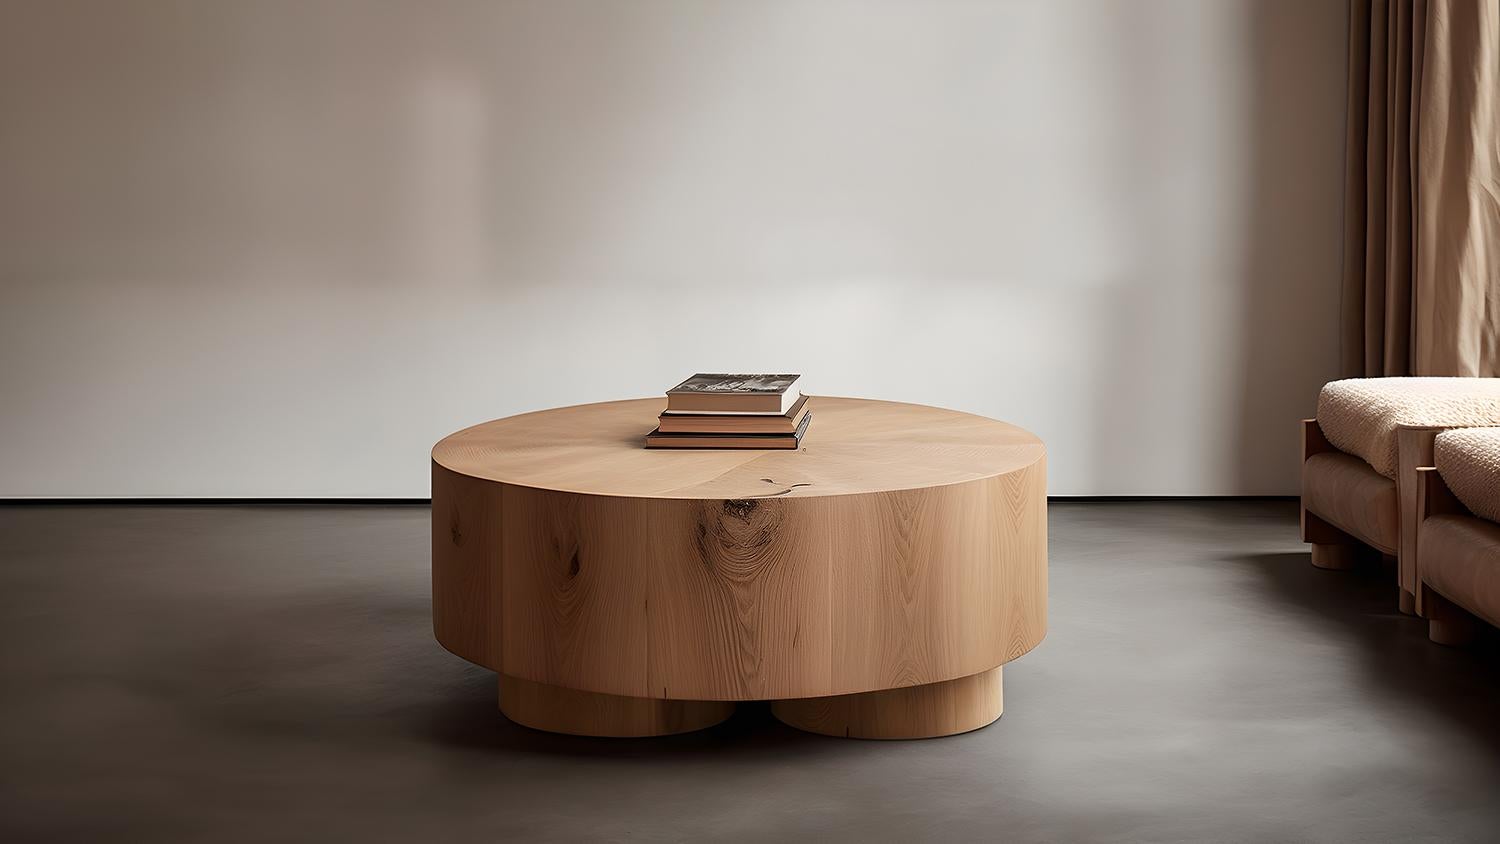 Table basse circulaire Podio XL

L'équipe de design de NONO présente une table basse qui respire l'élégance et la modernité. Cette pièce repose sur un ensemble de colonnes cylindriques, qui constituent une base solide pour le magnifique plateau